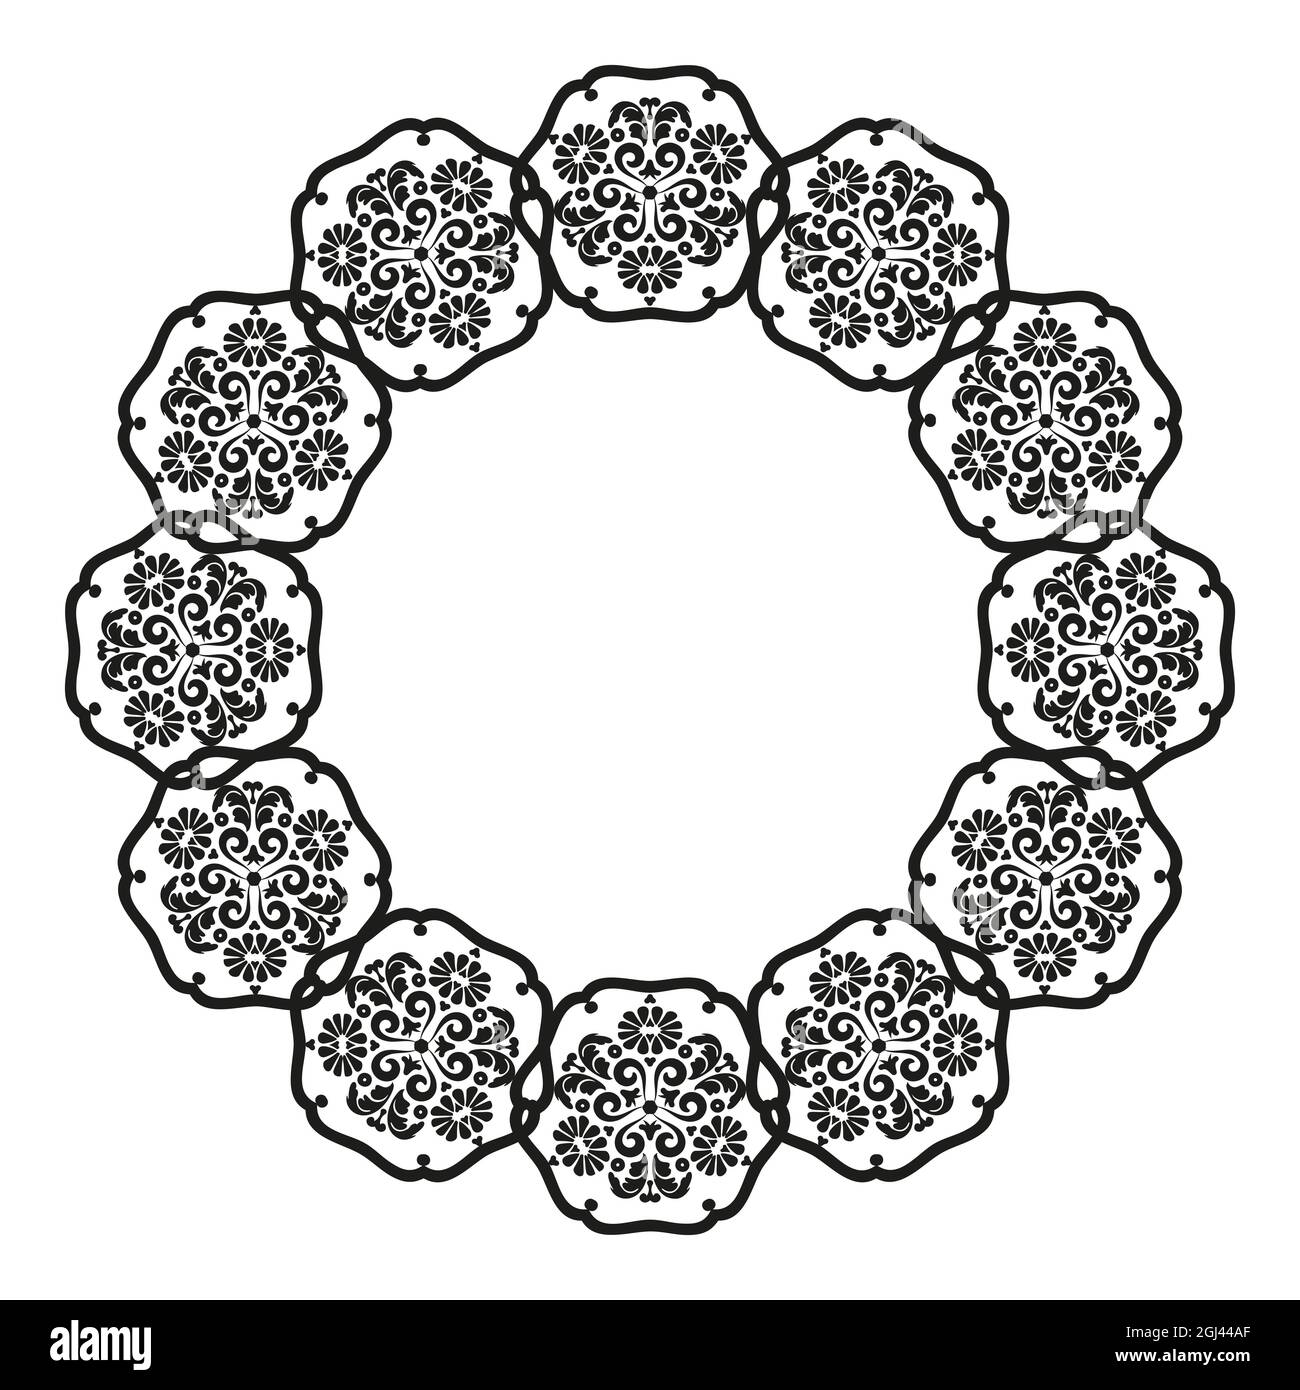 Mandala frame.for la progettazione di cornici, menu, inviti di nozze o etichette, per il taglio laser, la creazione di modelli in legno, marquesia. Digitale Illustrazione Vettoriale